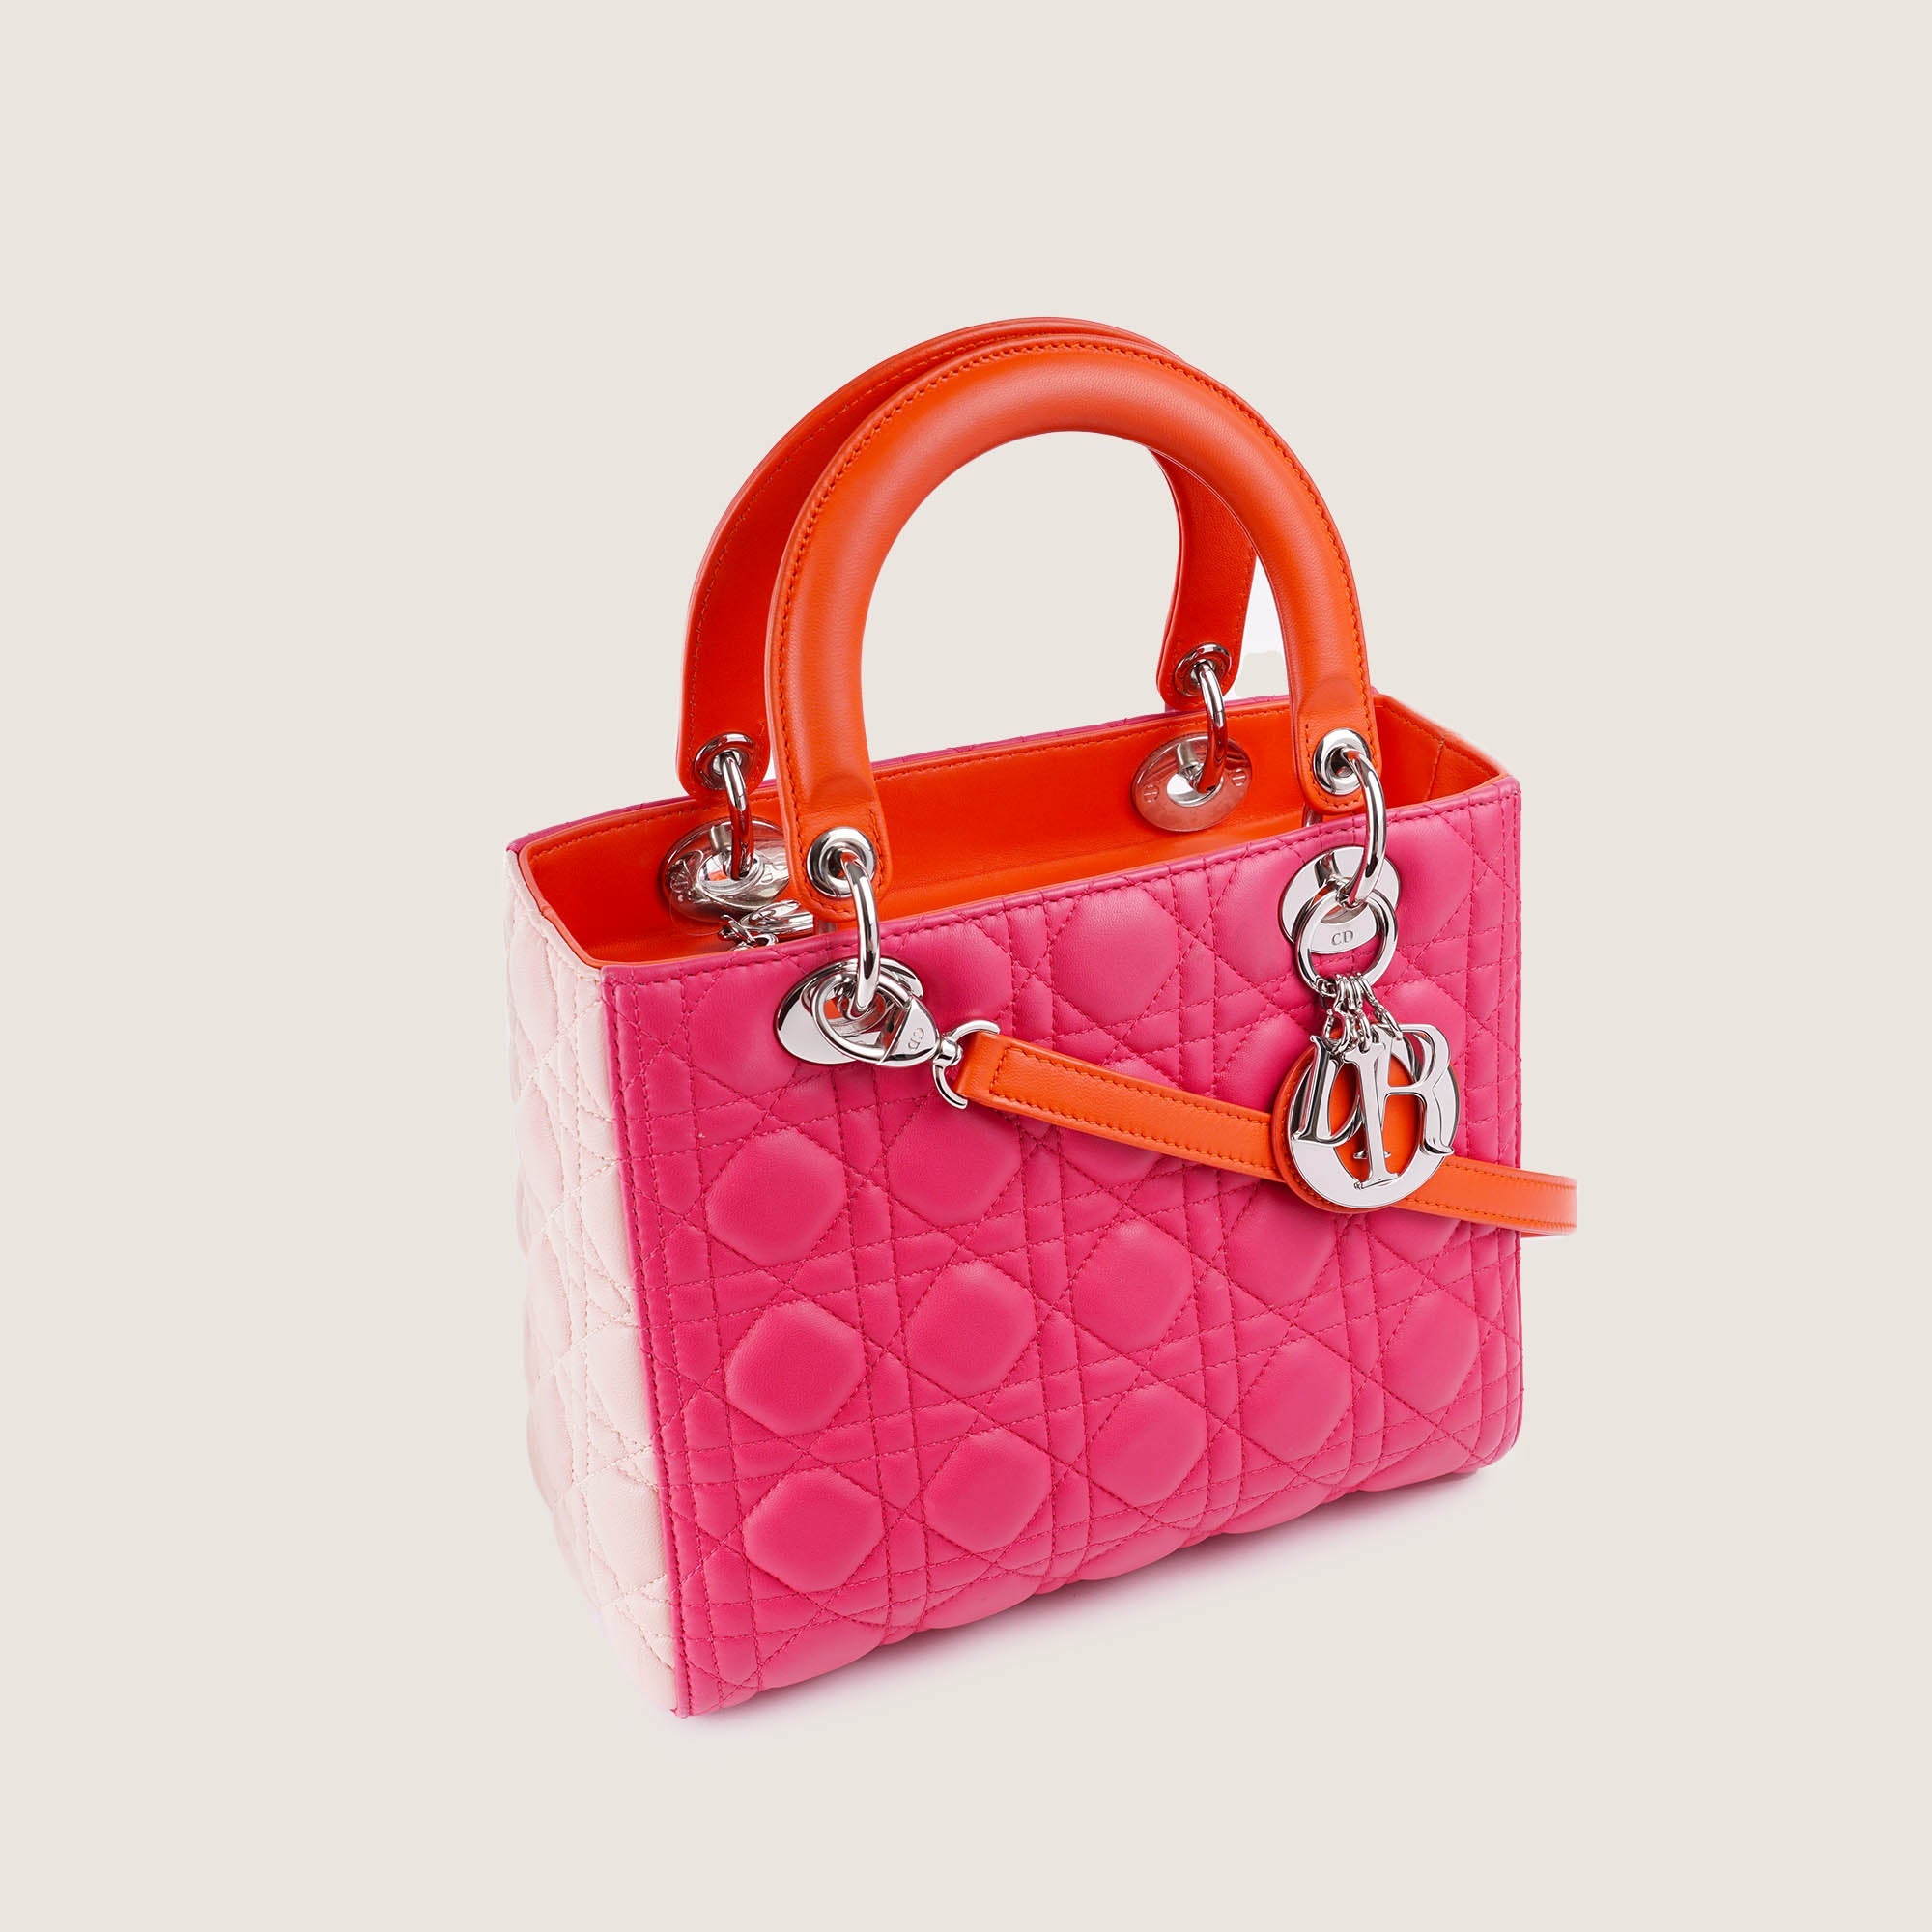 Lady Dior Medium Tricolor Handbag - CHRISTIAN DIOR - Affordable Luxury